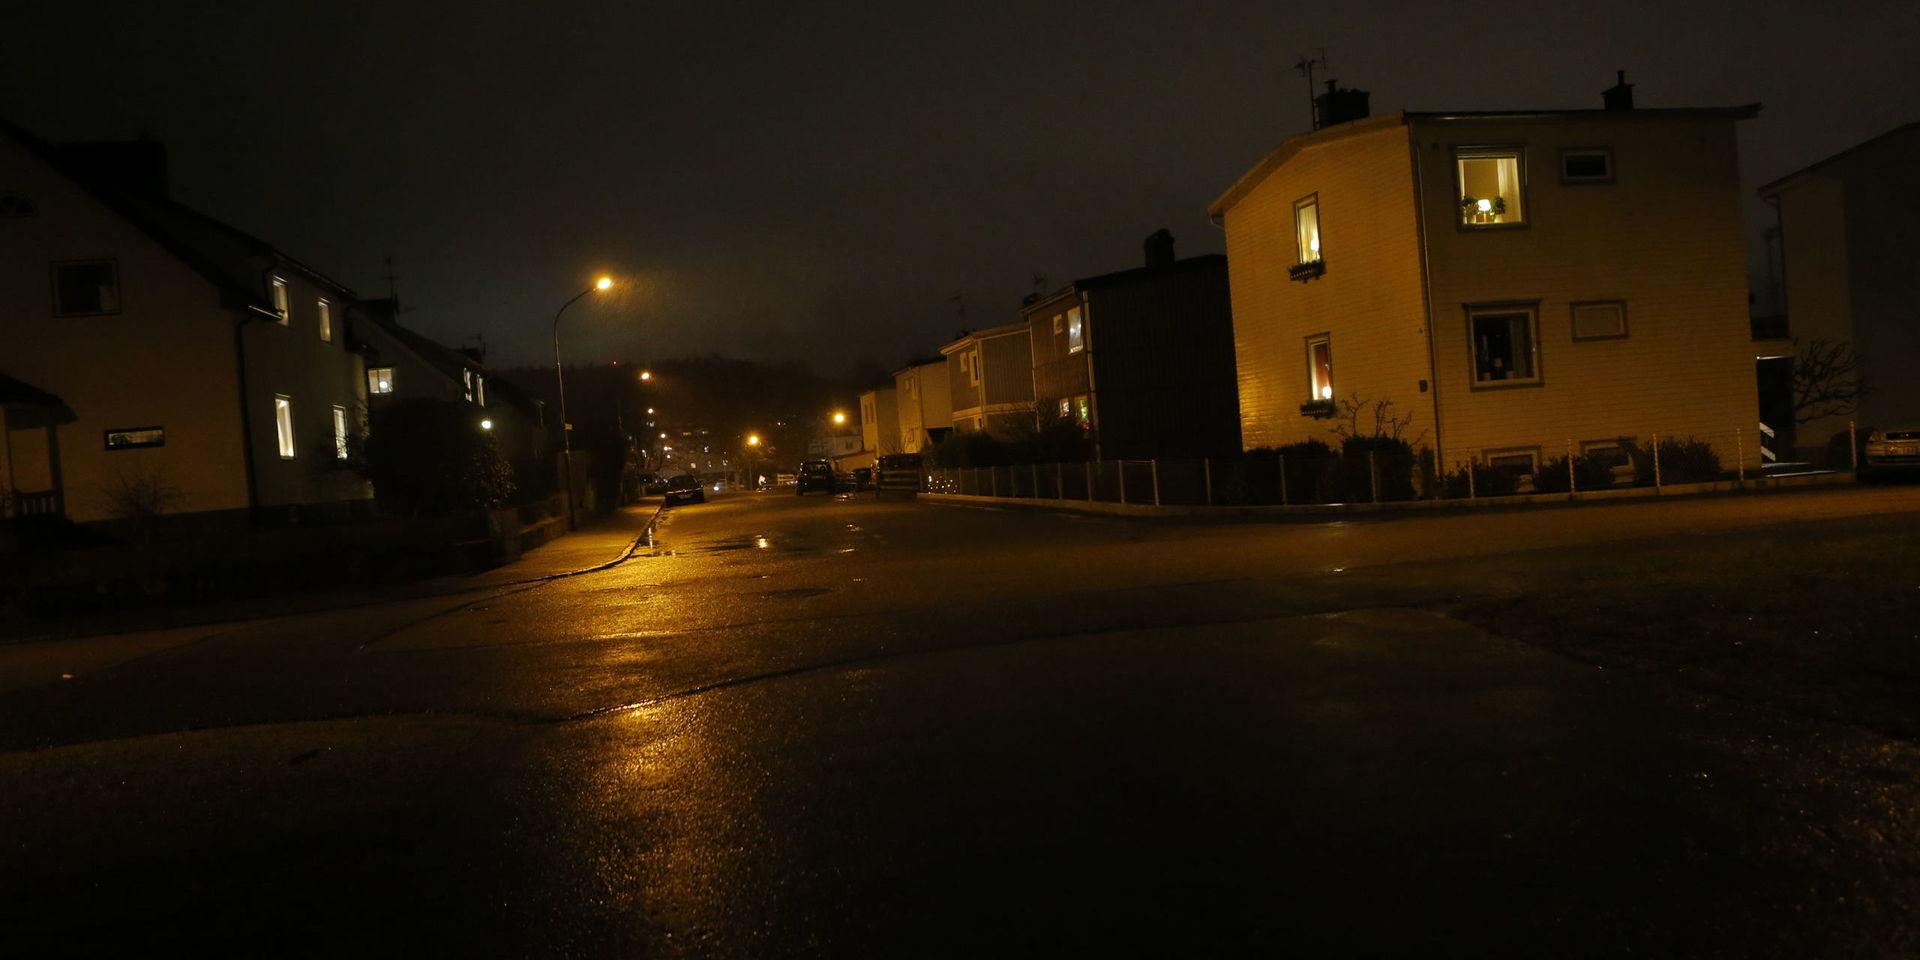 Det var under tisdagen som en äldre man blev knivhuggen till döds i området Erikslund i Borås. Flera elever på en närliggande högstadieskola blev vittnen till händelsen. 